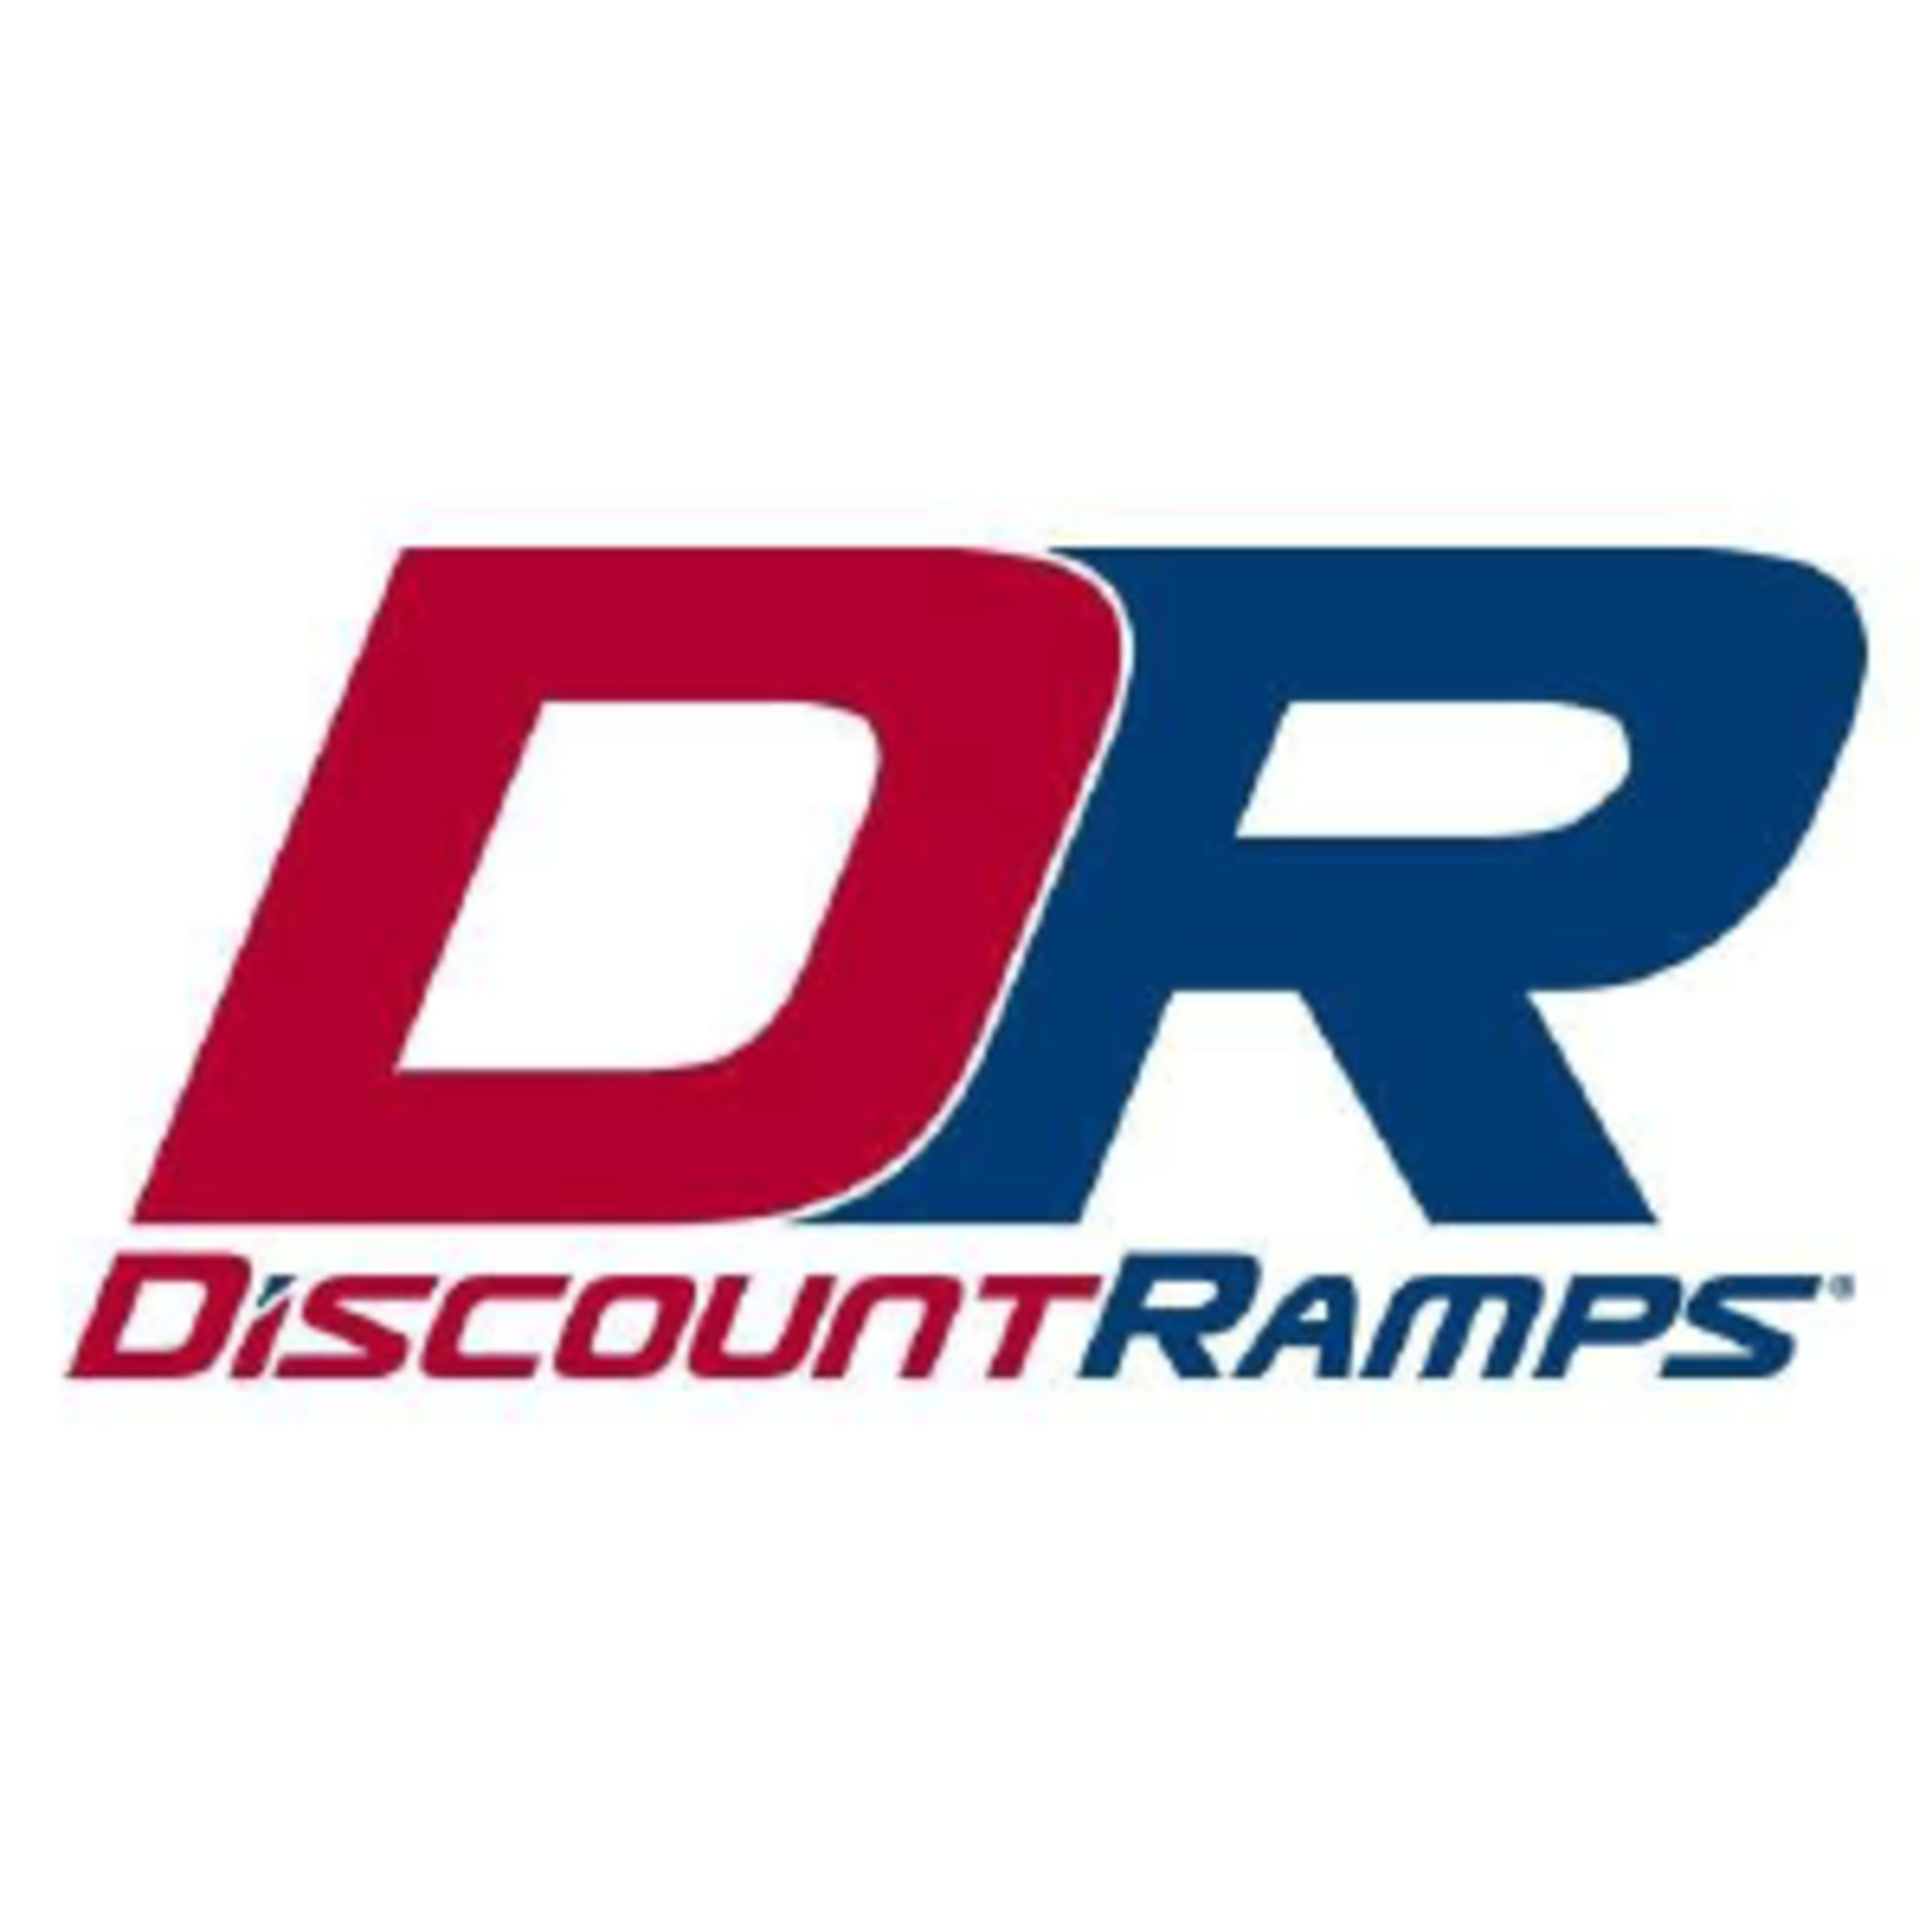 Discount Ramps Code